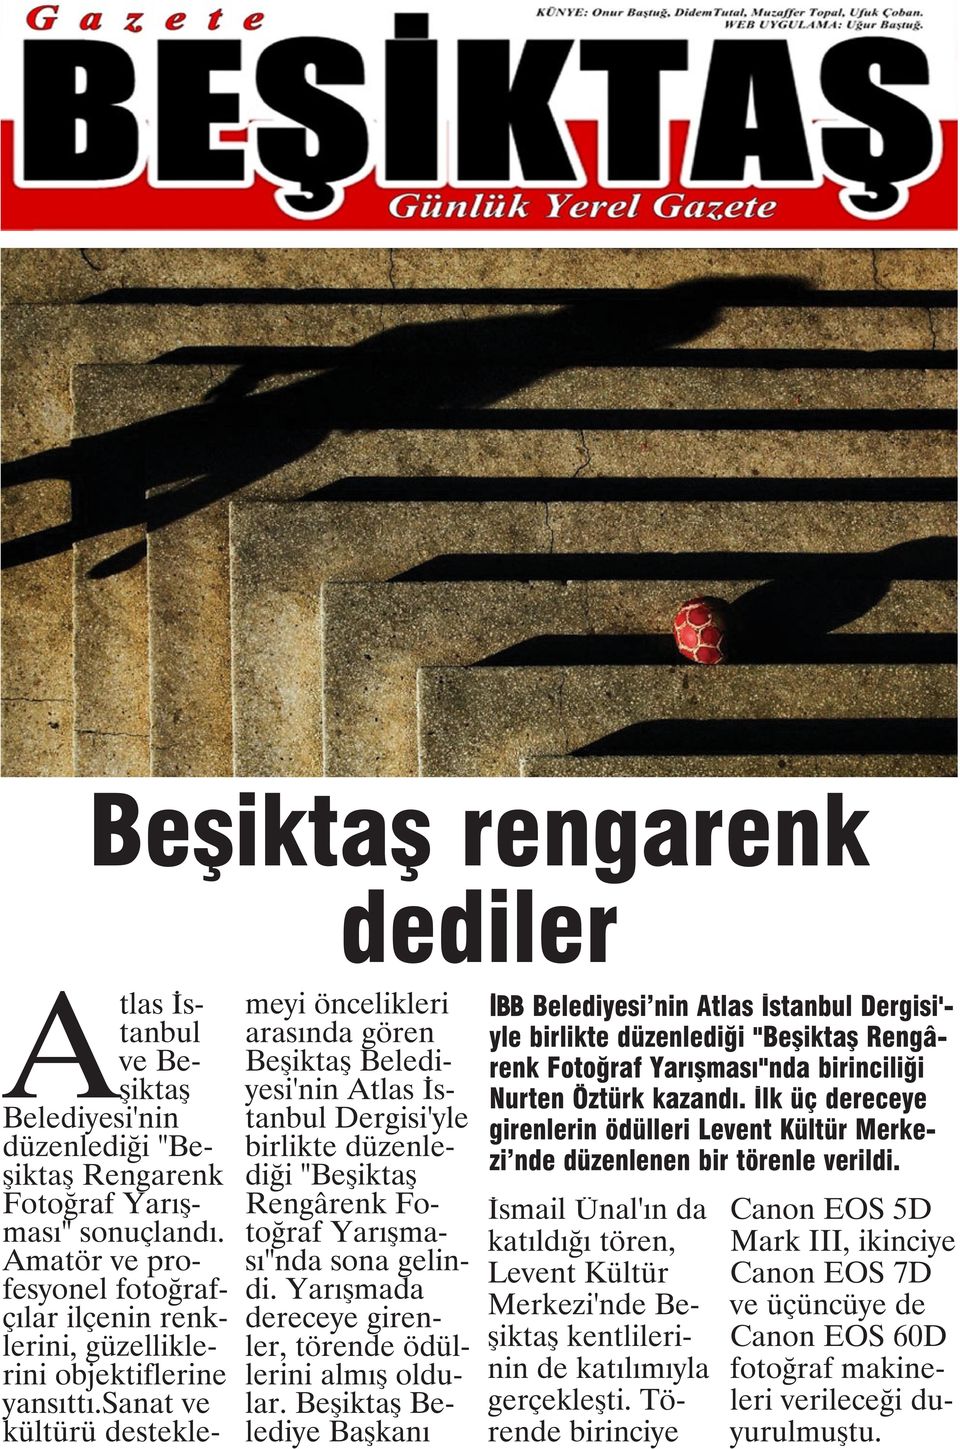 sanat ve kültürü desteklemeyi öncelikleri arasında gören Beşiktaş Belediyesi'nin Atlas İstanbul Dergisi'yle birlikte düzenlediği "Beşiktaş Rengârenk Fotoğraf Yarışması"nda sona gelindi.